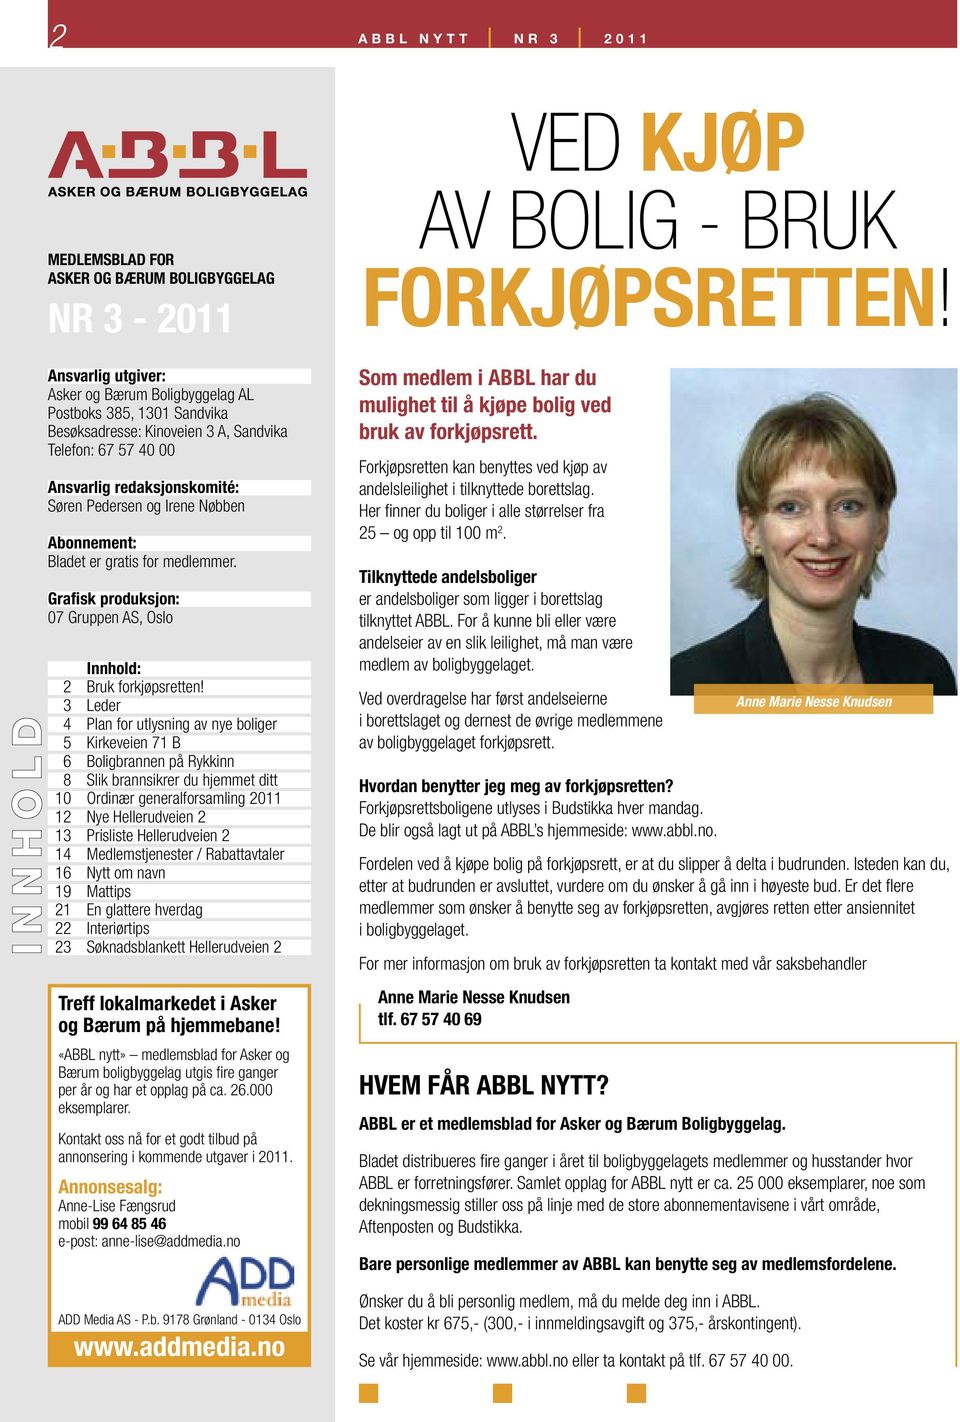 Kontakt oss nå for et godt tilbud på annonsering i kommende utgaver i 2011. Annonsesalg: Anne-Lise Fængsrud mobil 99 64 85 46 e-post: anne-lise@addmedia.